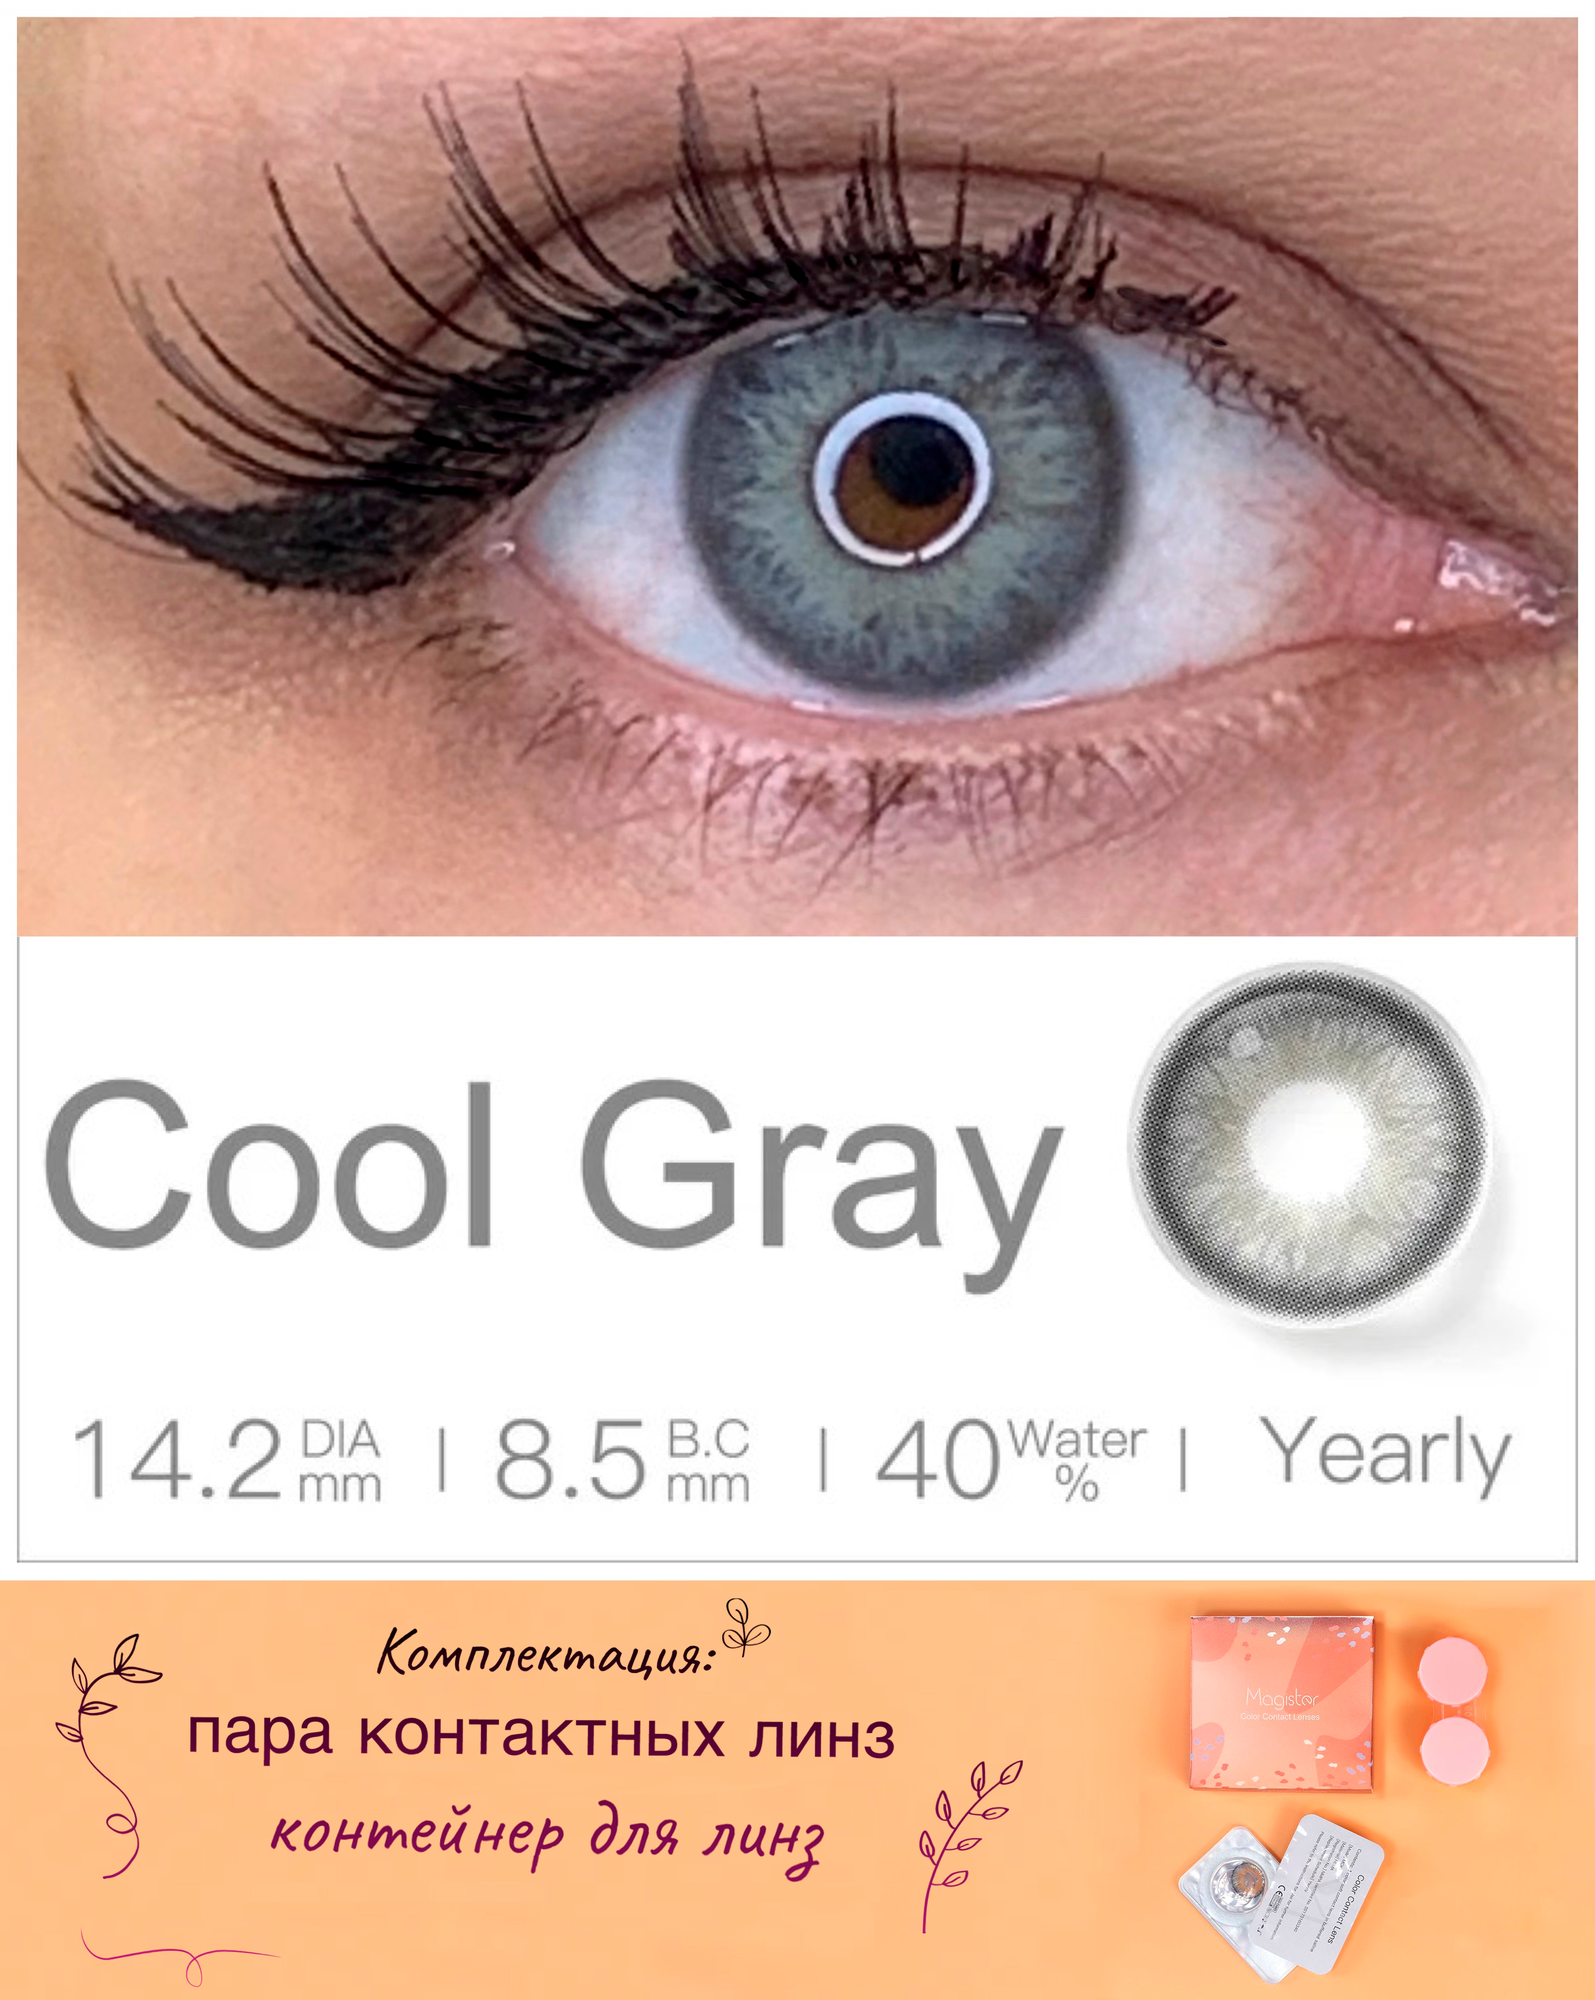 Цветные контактные линзы MAGISTER без коррекции 1 год, D 0.00, 14.2, R 8.5, 40%, цвет cool gray (серый). Комплектация: 2шт линзы, контейнер